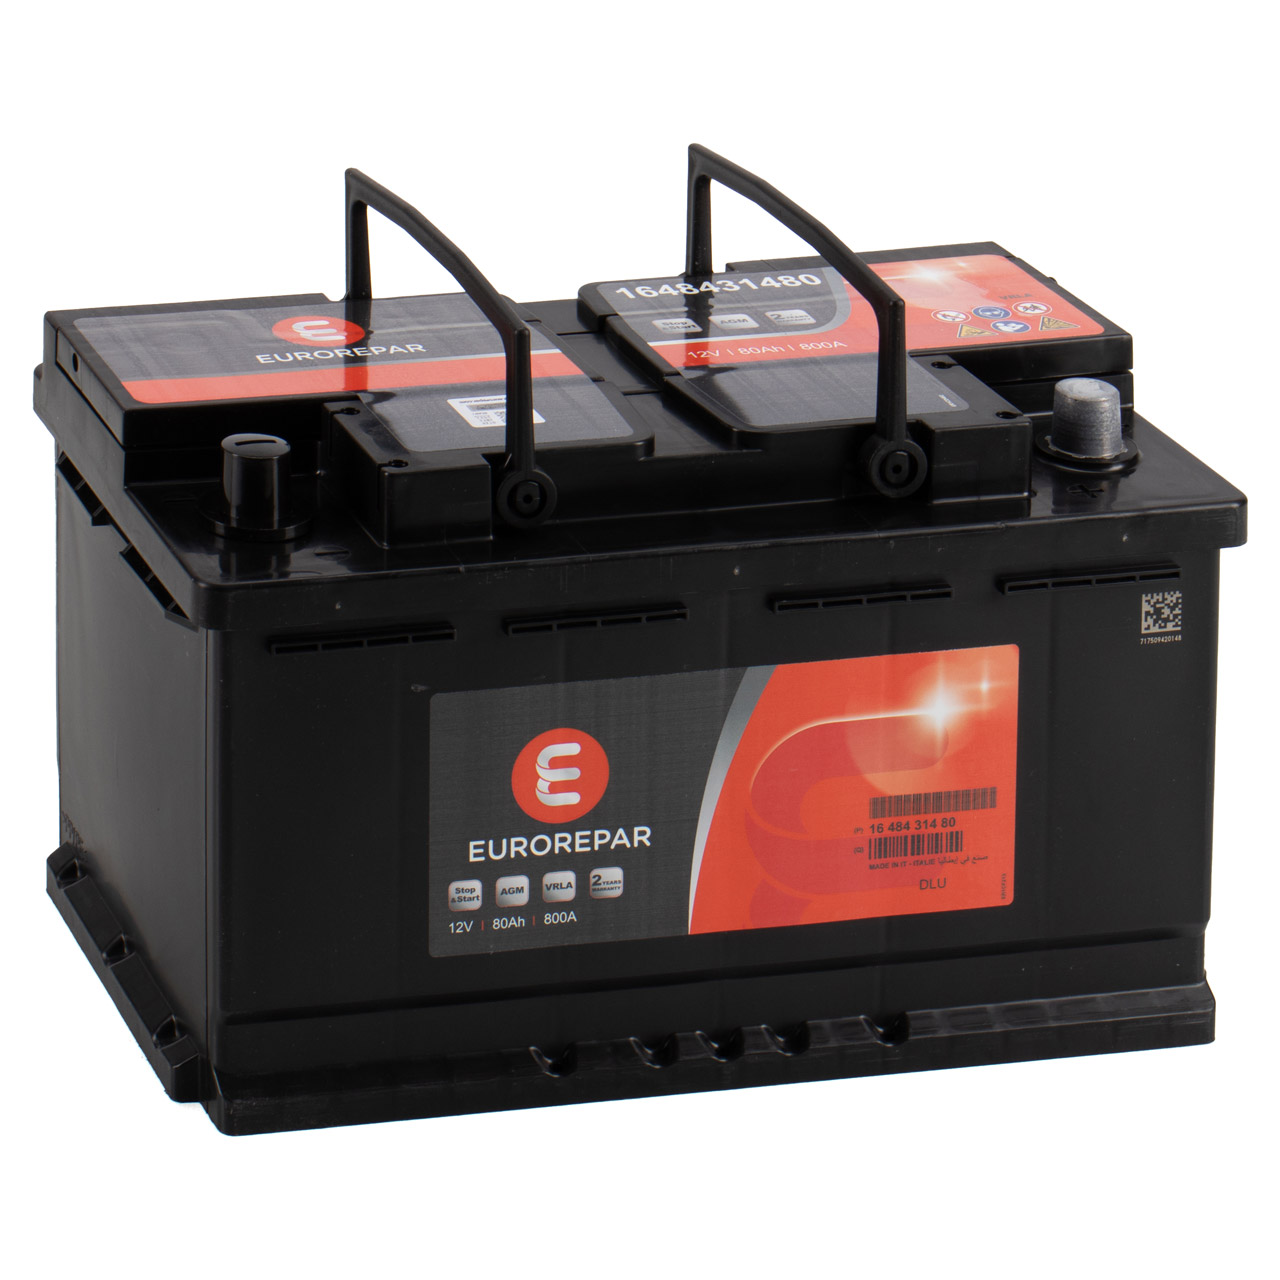 Autobatterie Exide EK800 AGM Start-Stop Starterbatterie - Batteriehandel &  Schmierstofftechnik